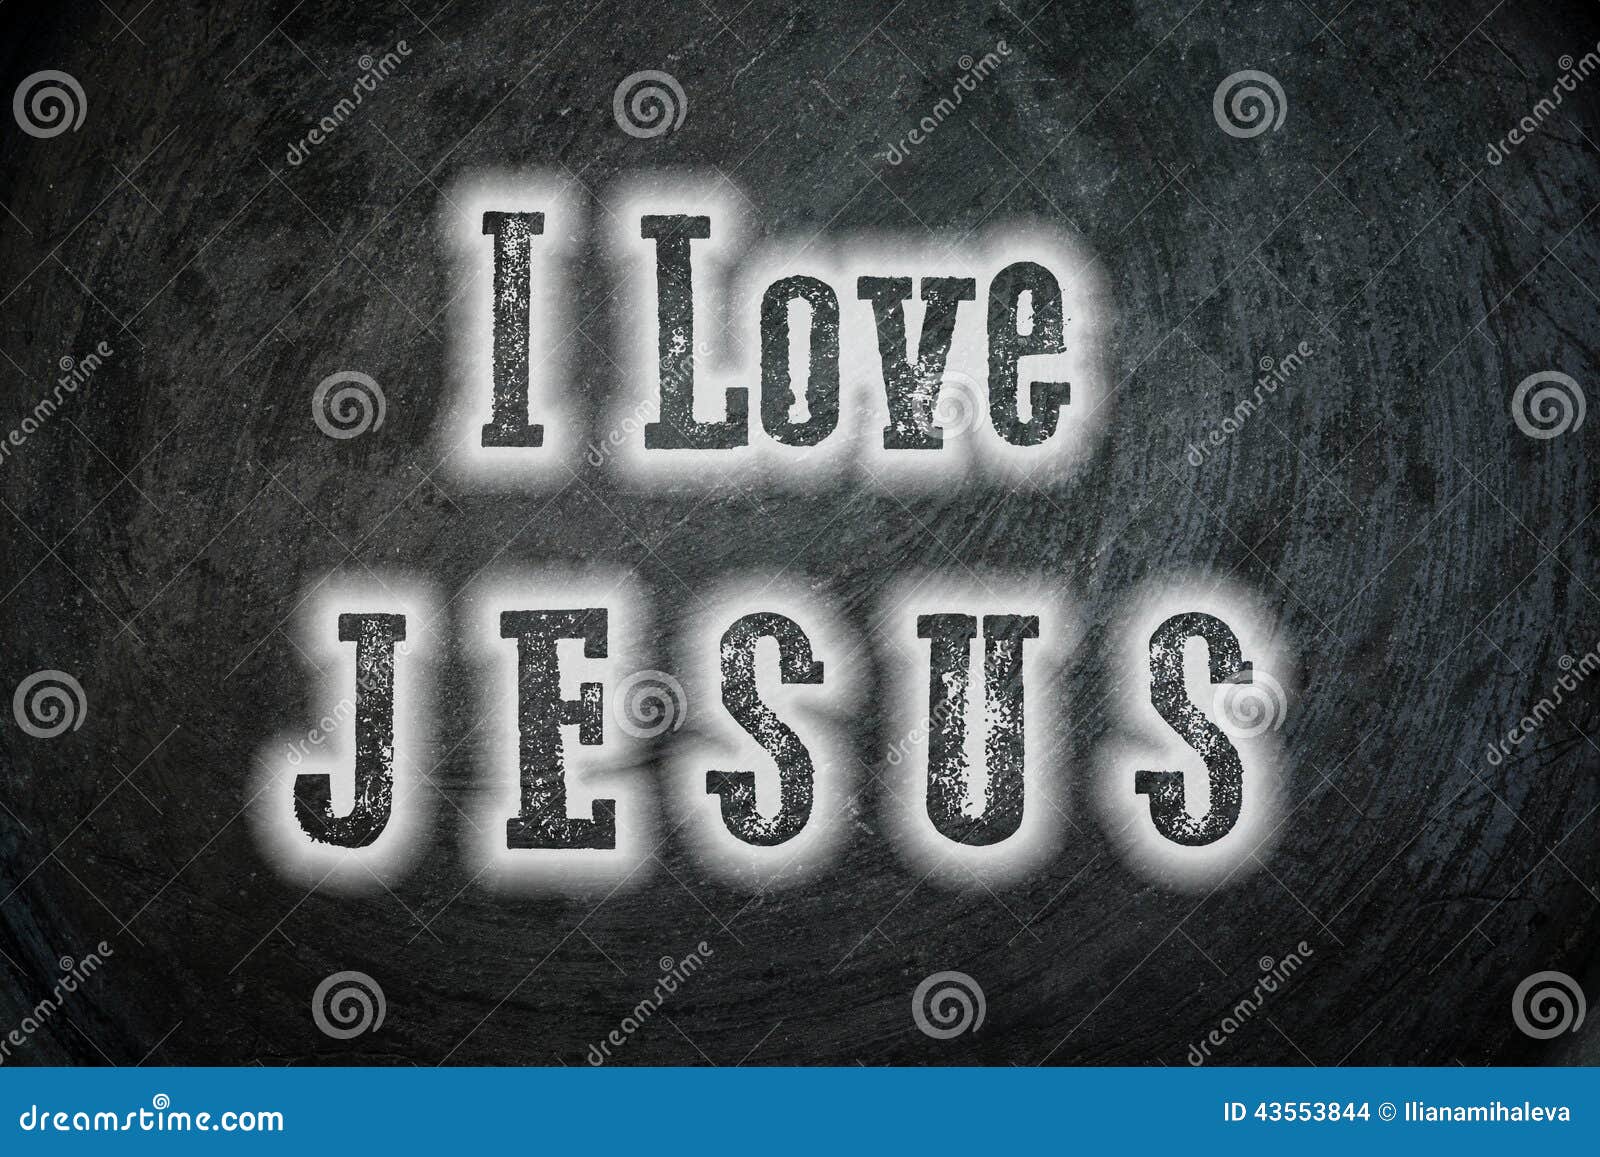 I Love Jesus Stock Illustrations – 422 I Love Jesus Stock ...